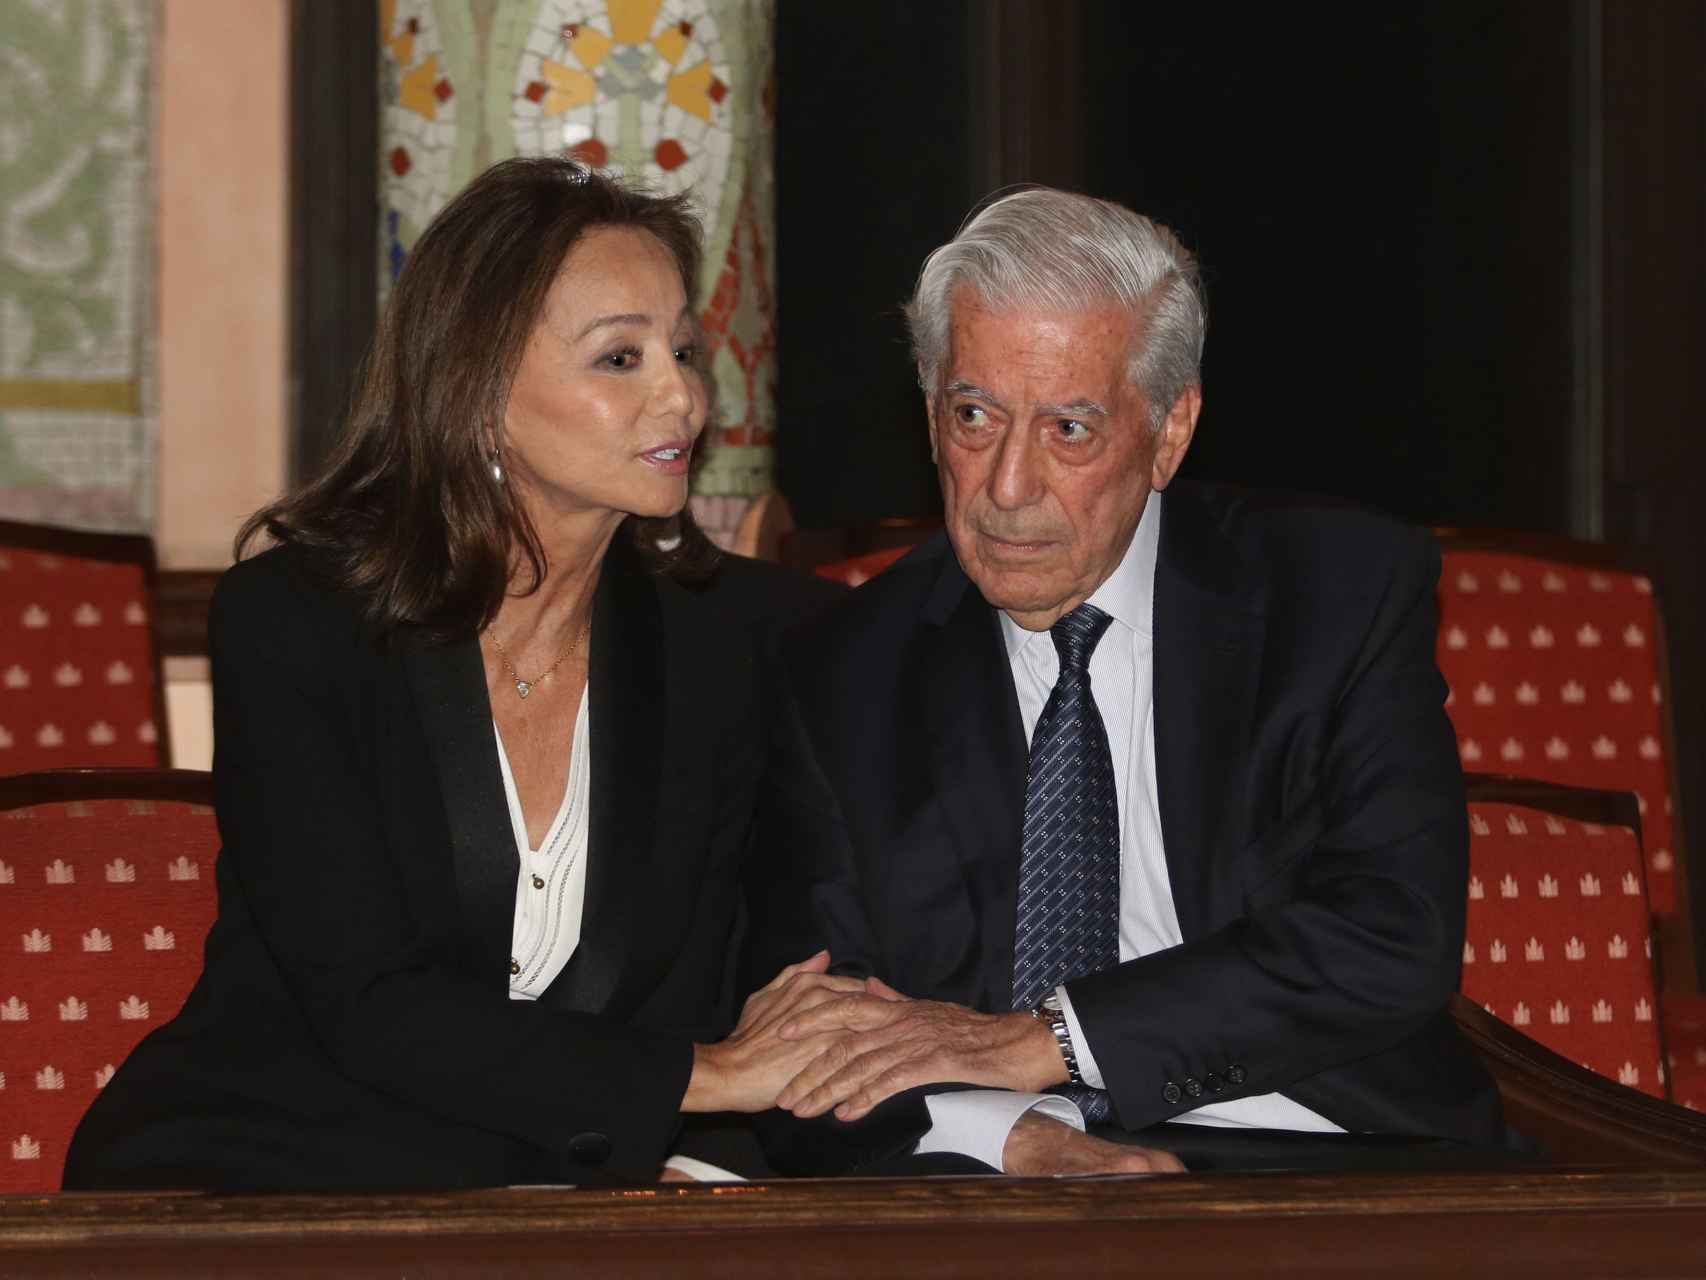 Isabel Preysler y Mario Vargas Llosa con las manos entrelazadas